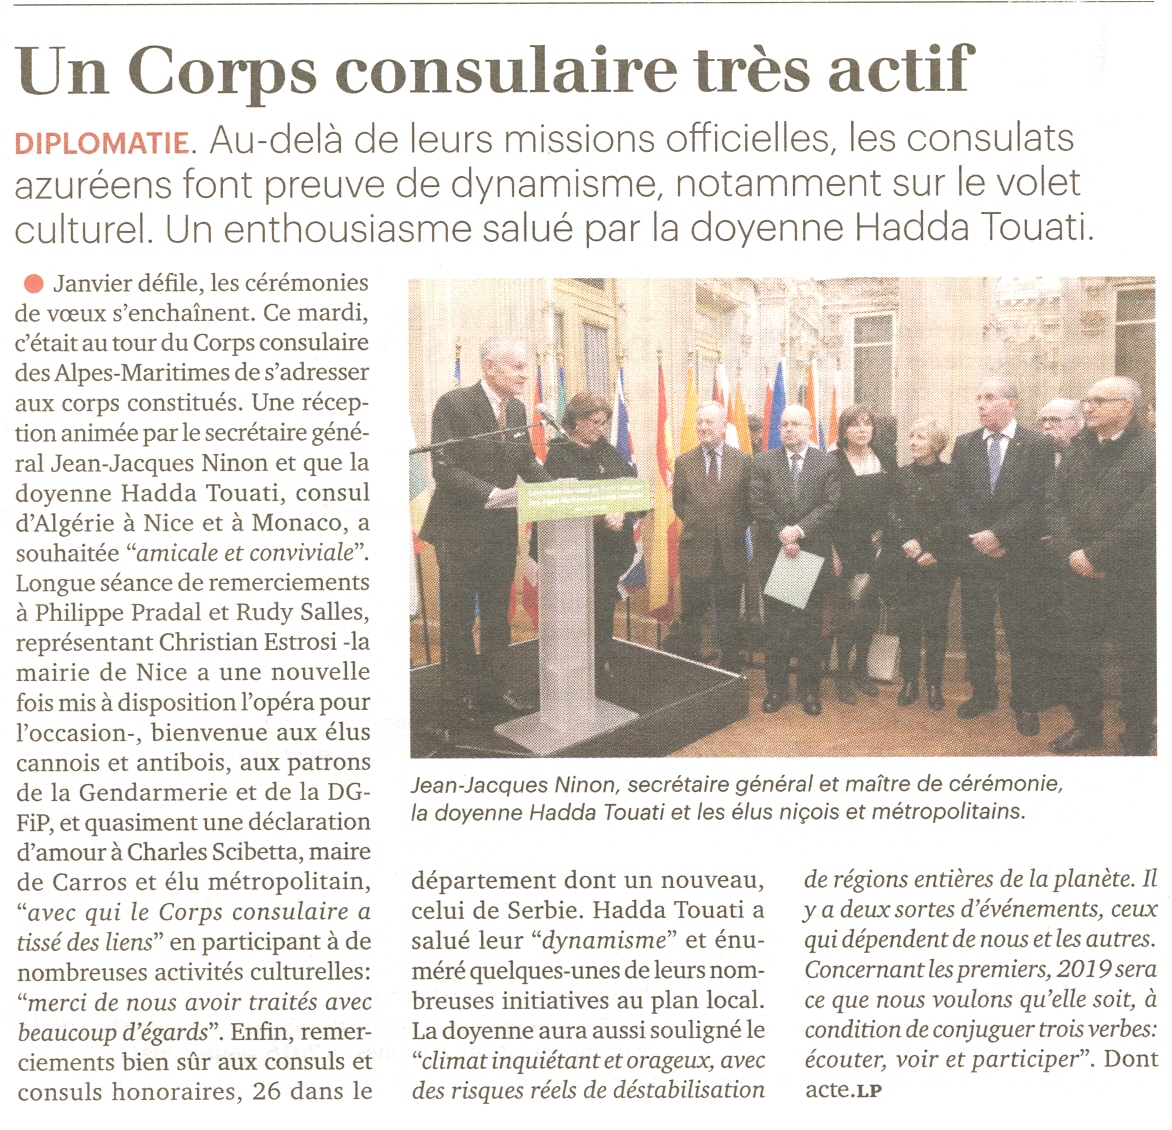 La Tribune Côte d'Azur, 25-1-2019